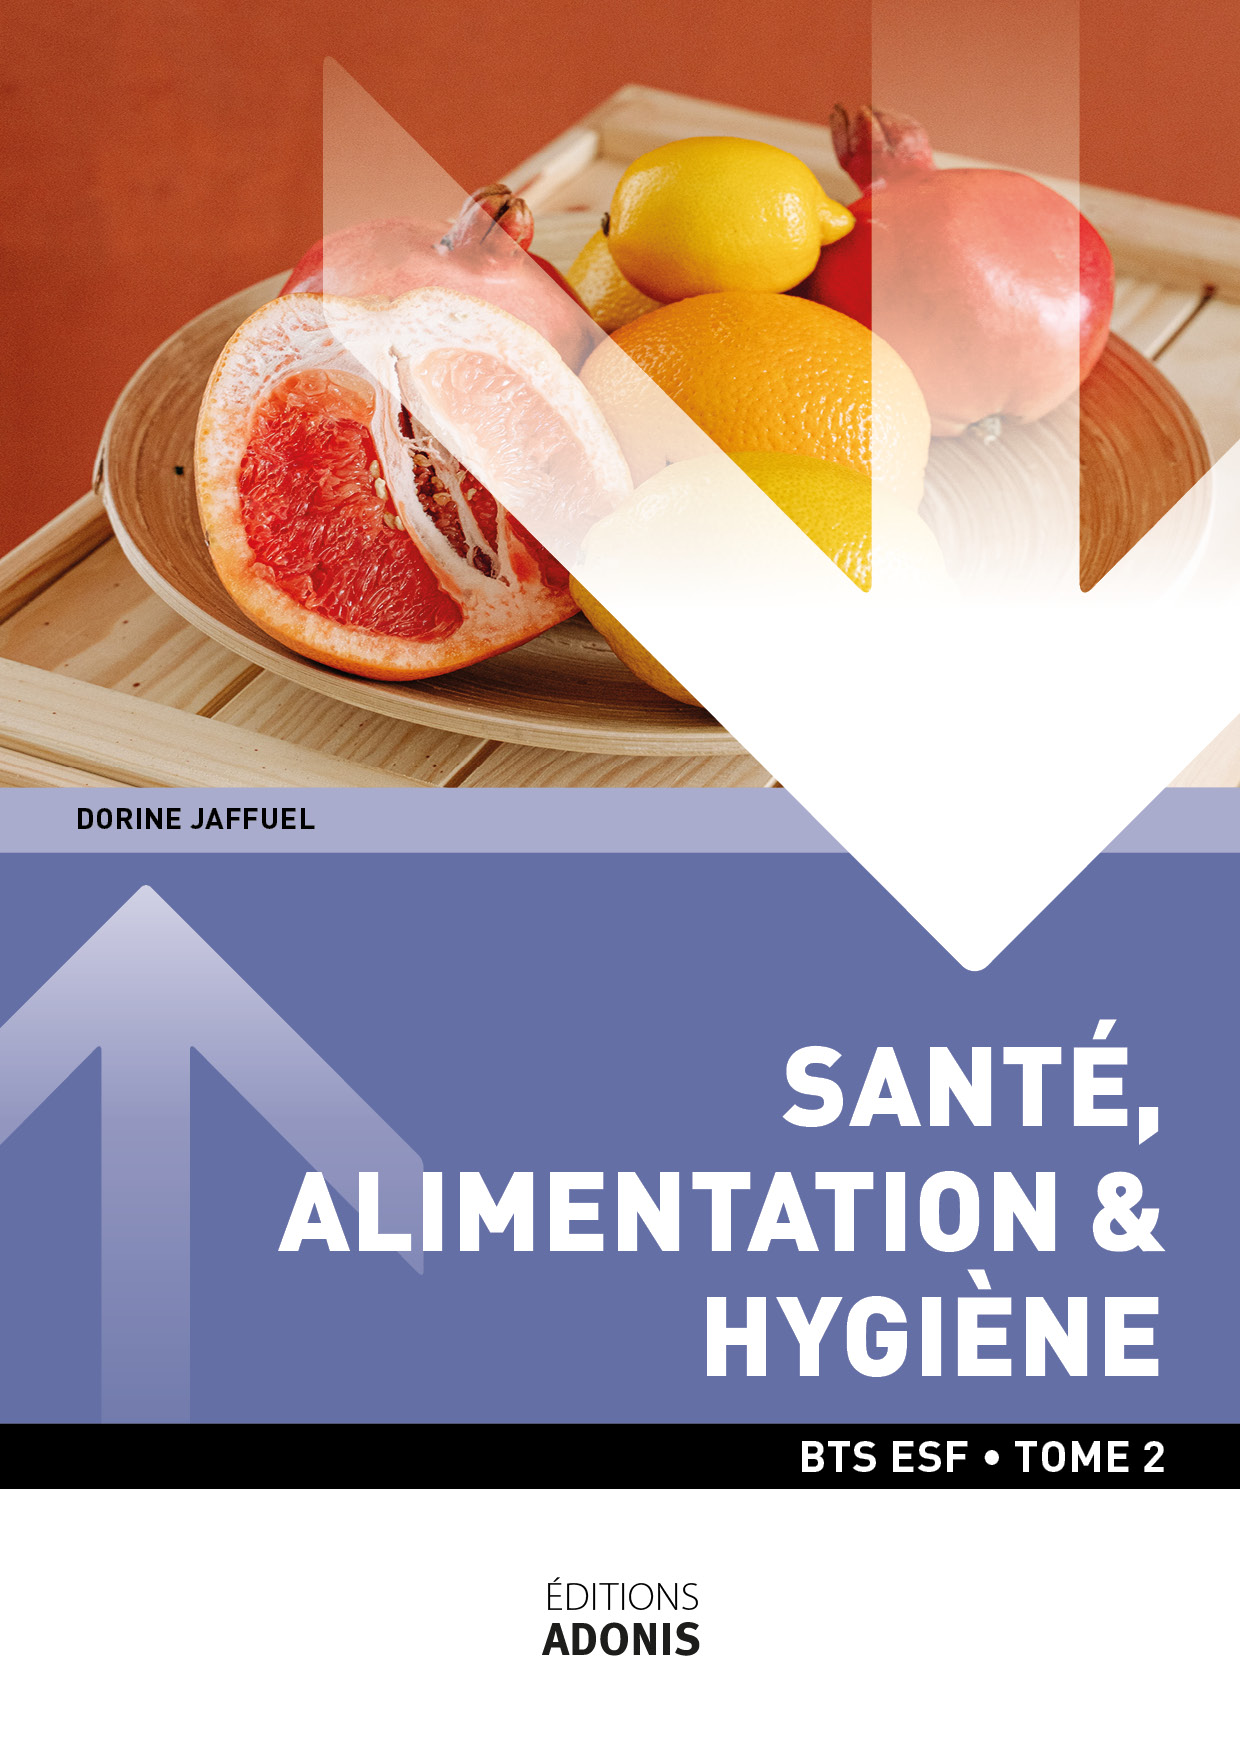 BTS ESF - Santé Alimentation Hygiène Tome 2 (2ème année)